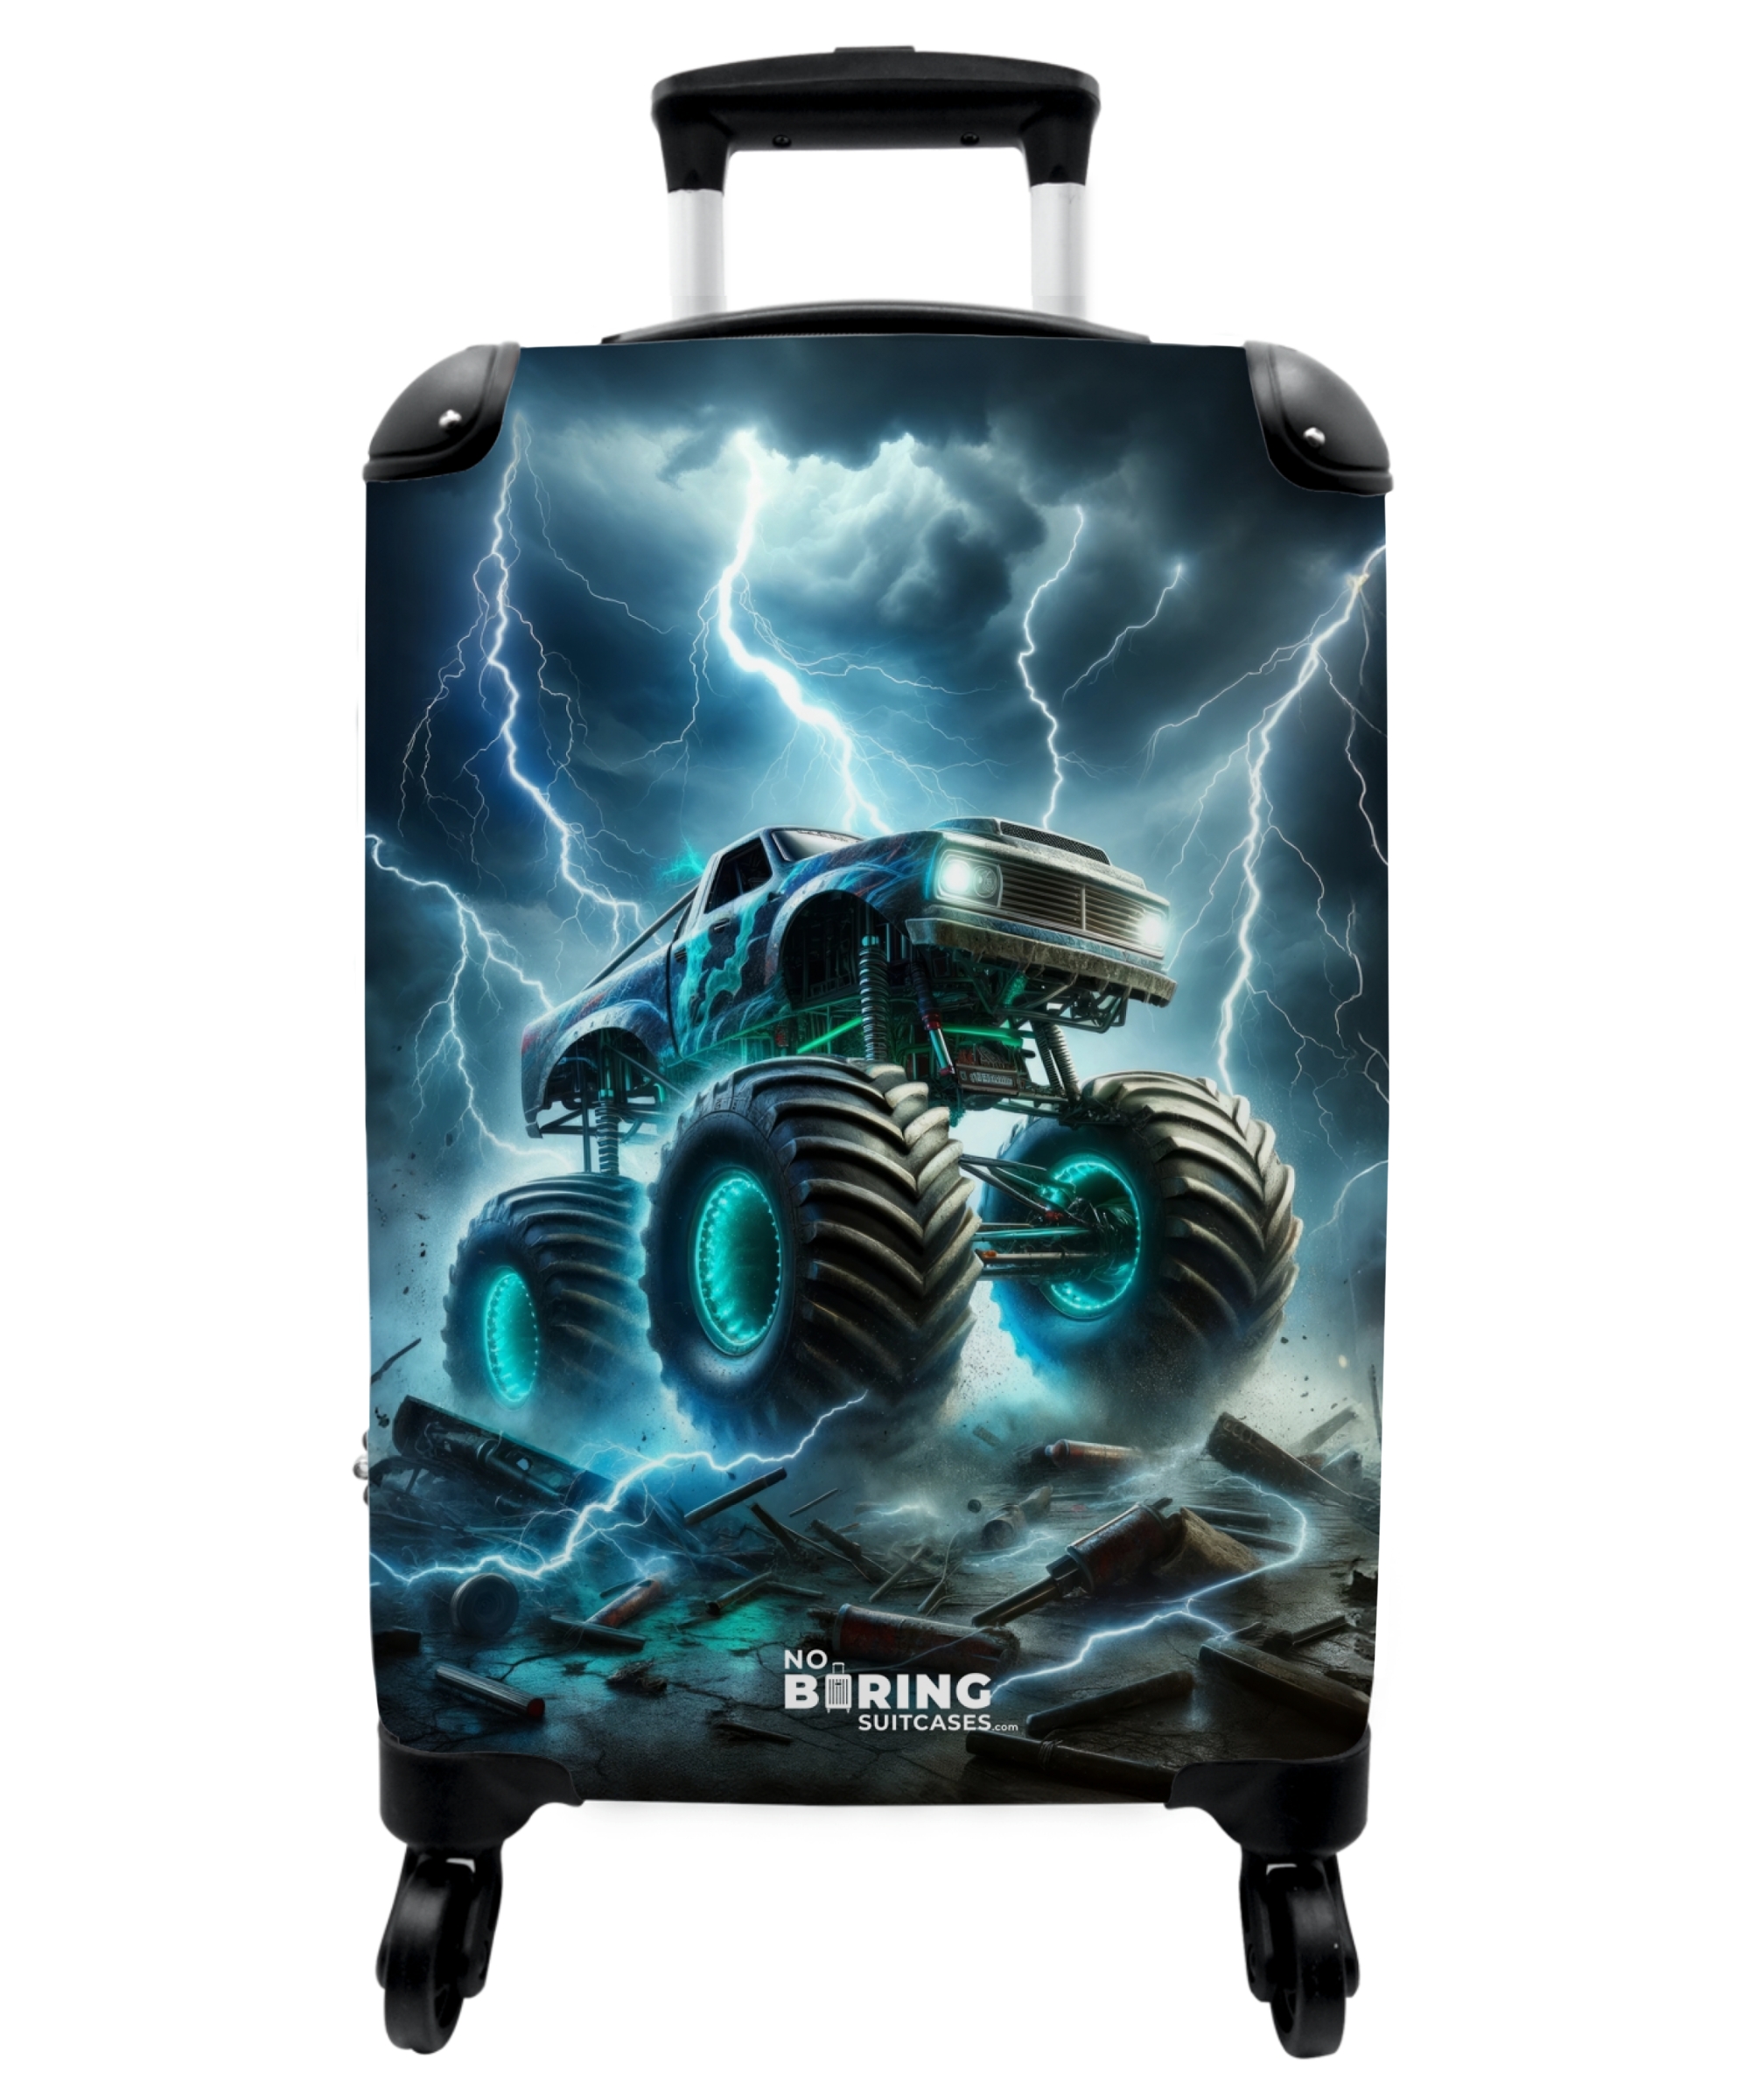 Koffer - Grote monstertruck met blauwe accenten